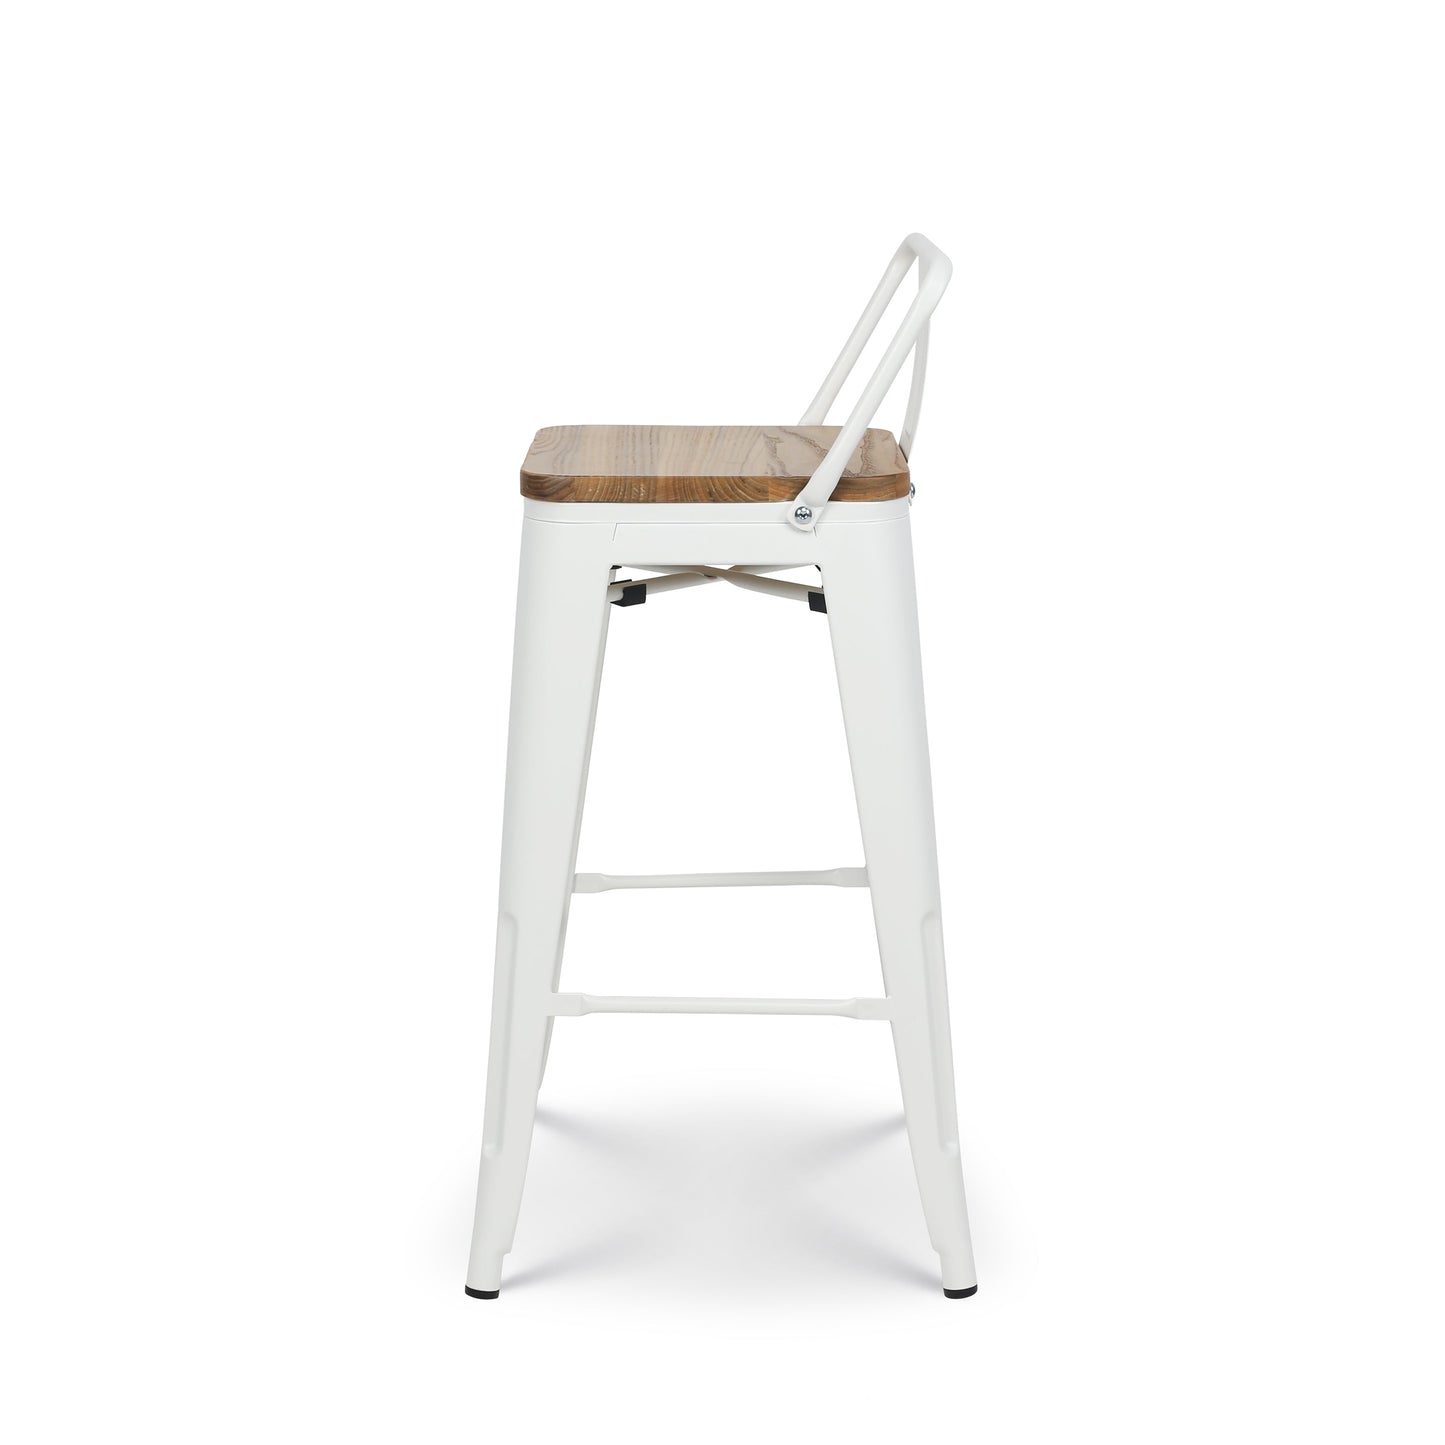 Tabouret en métal blanc mat style industriel avec dossier et assise en bois clair - Hauteur 66cm